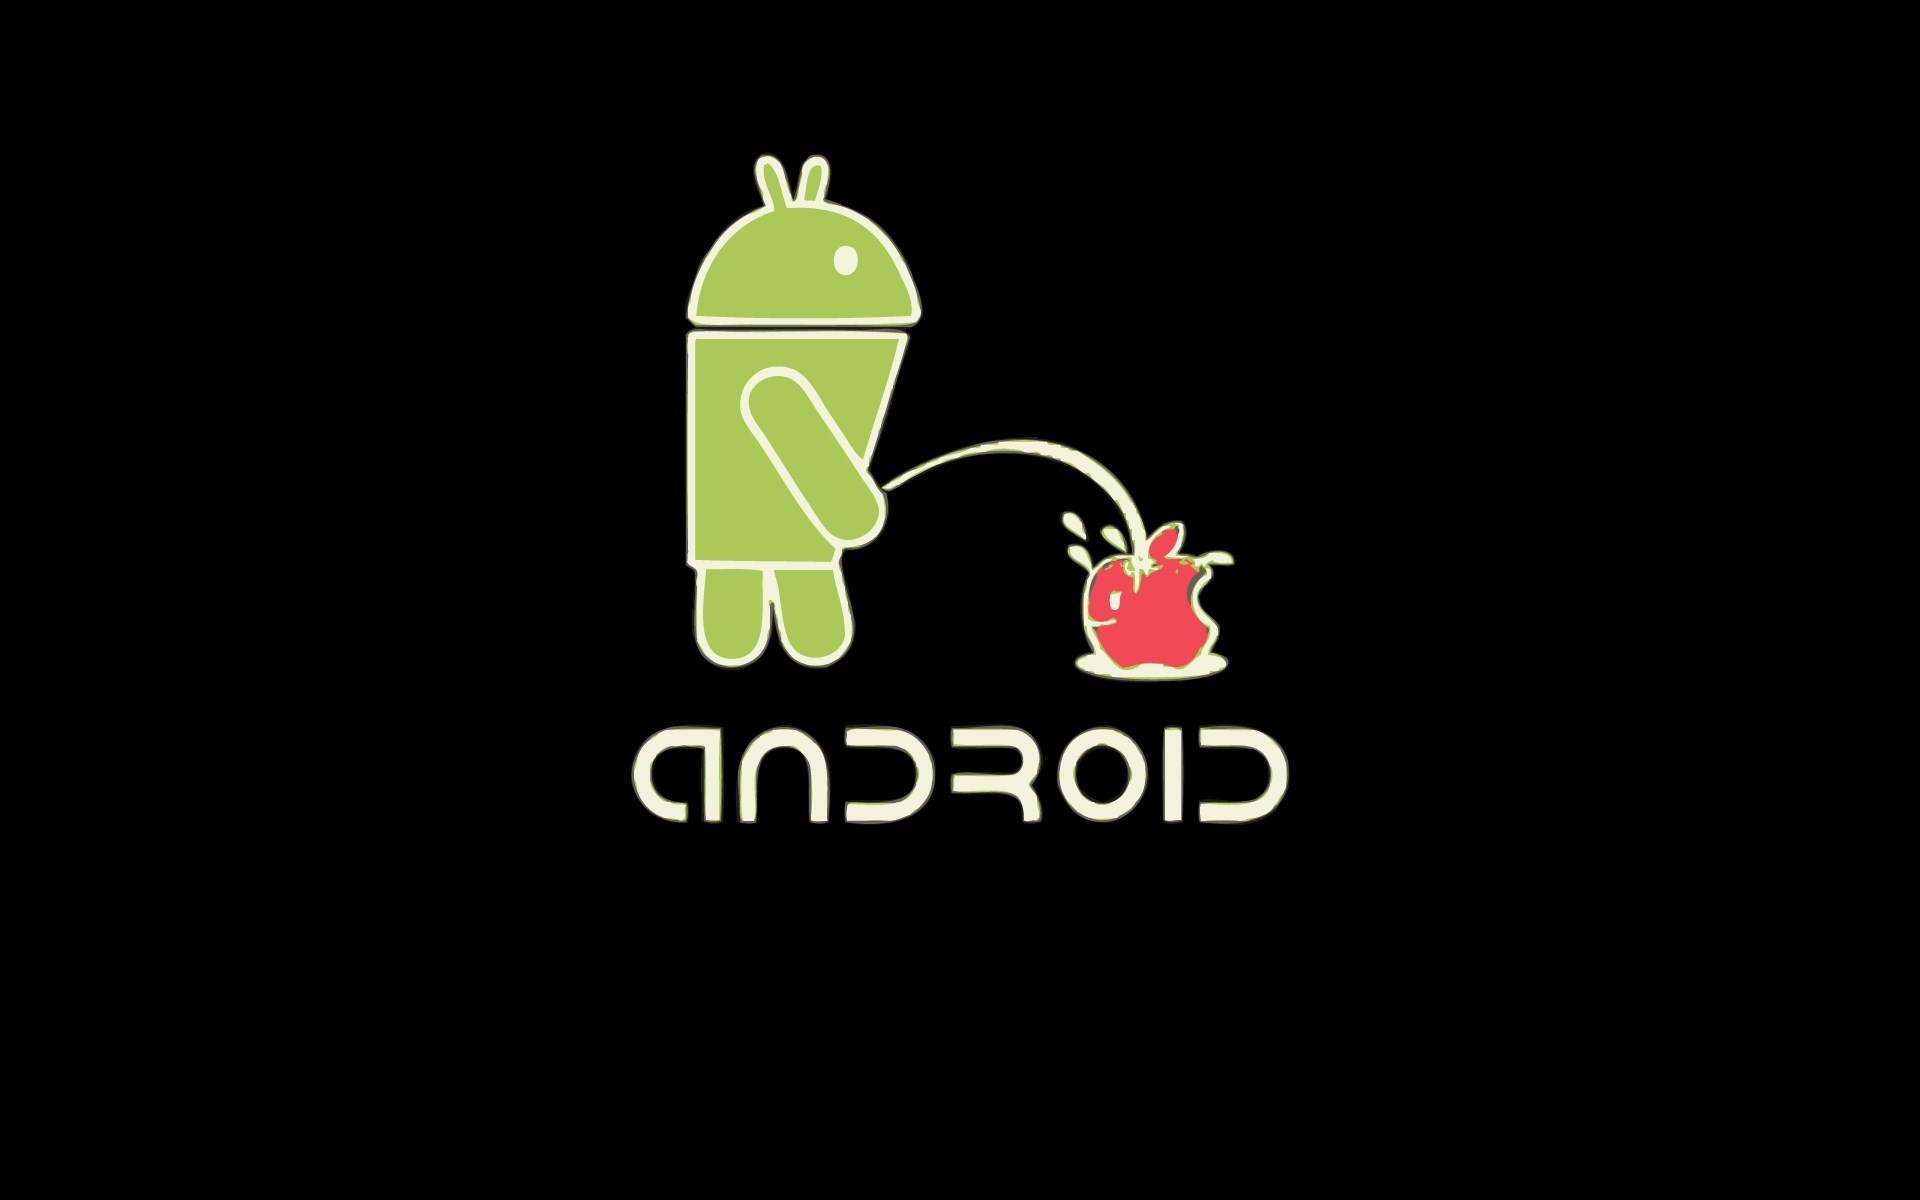 Логотип андроид. Андроид против айфона. Заставки на Android. Андроид прикольные. Android dick